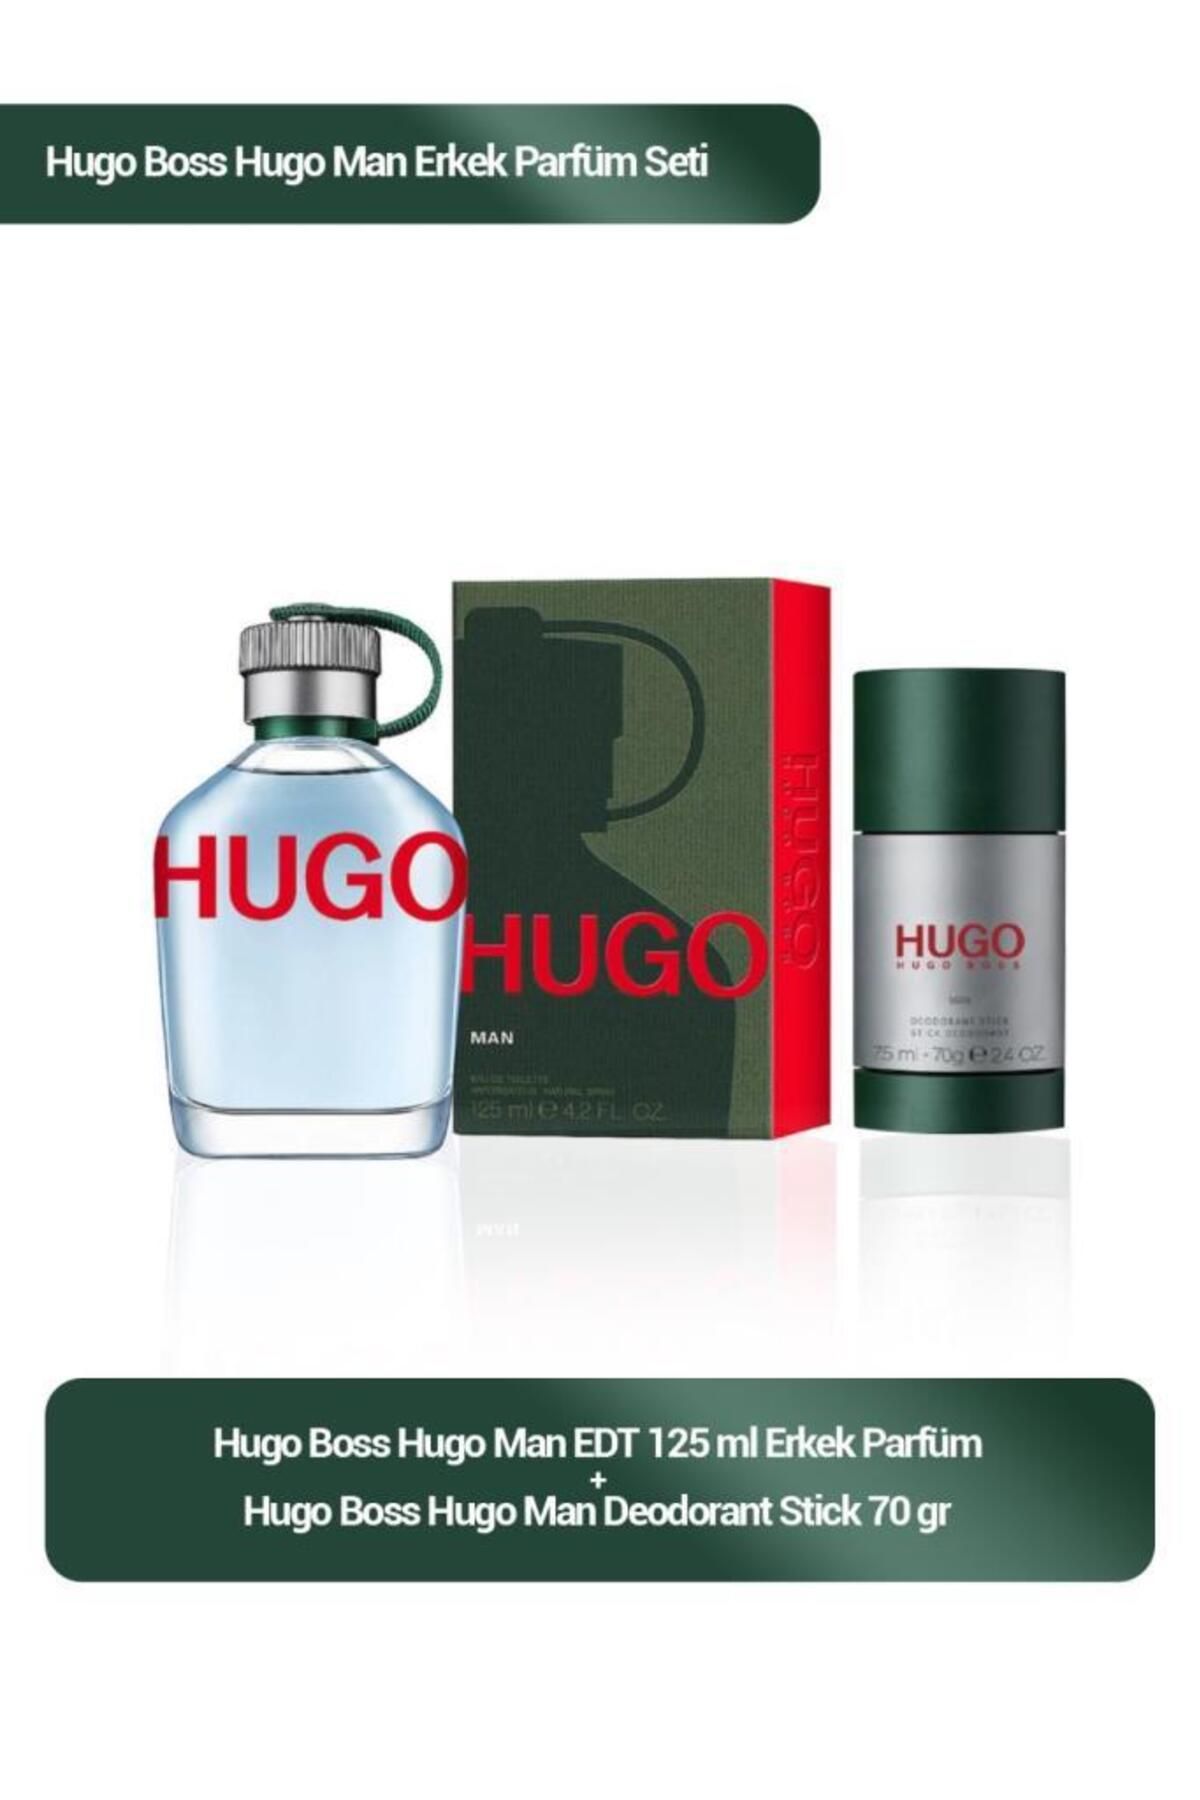 Hugo Boss Hugo Man EDT 125 ml Erkek Parfüm Seti